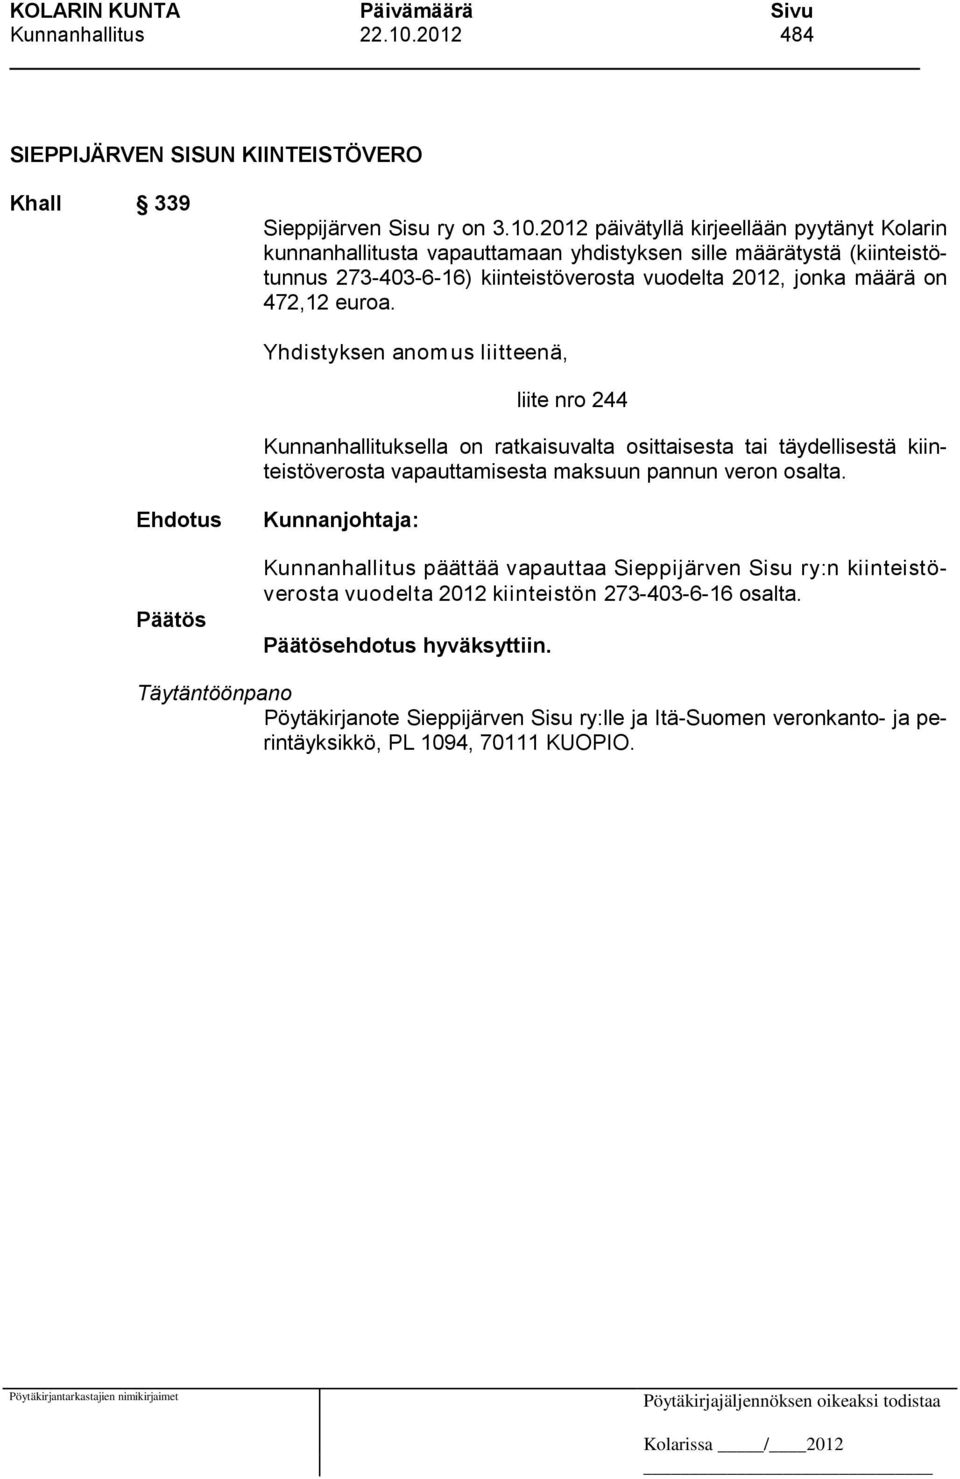 2012 päivätyllä kirjeellään pyytänyt Kolarin kunnanhallitusta vapauttamaan yhdistyksen sille määrätystä (kiinteistötunnus 273-403-6-16) kiinteistöverosta vuodelta 2012, jonka määrä on